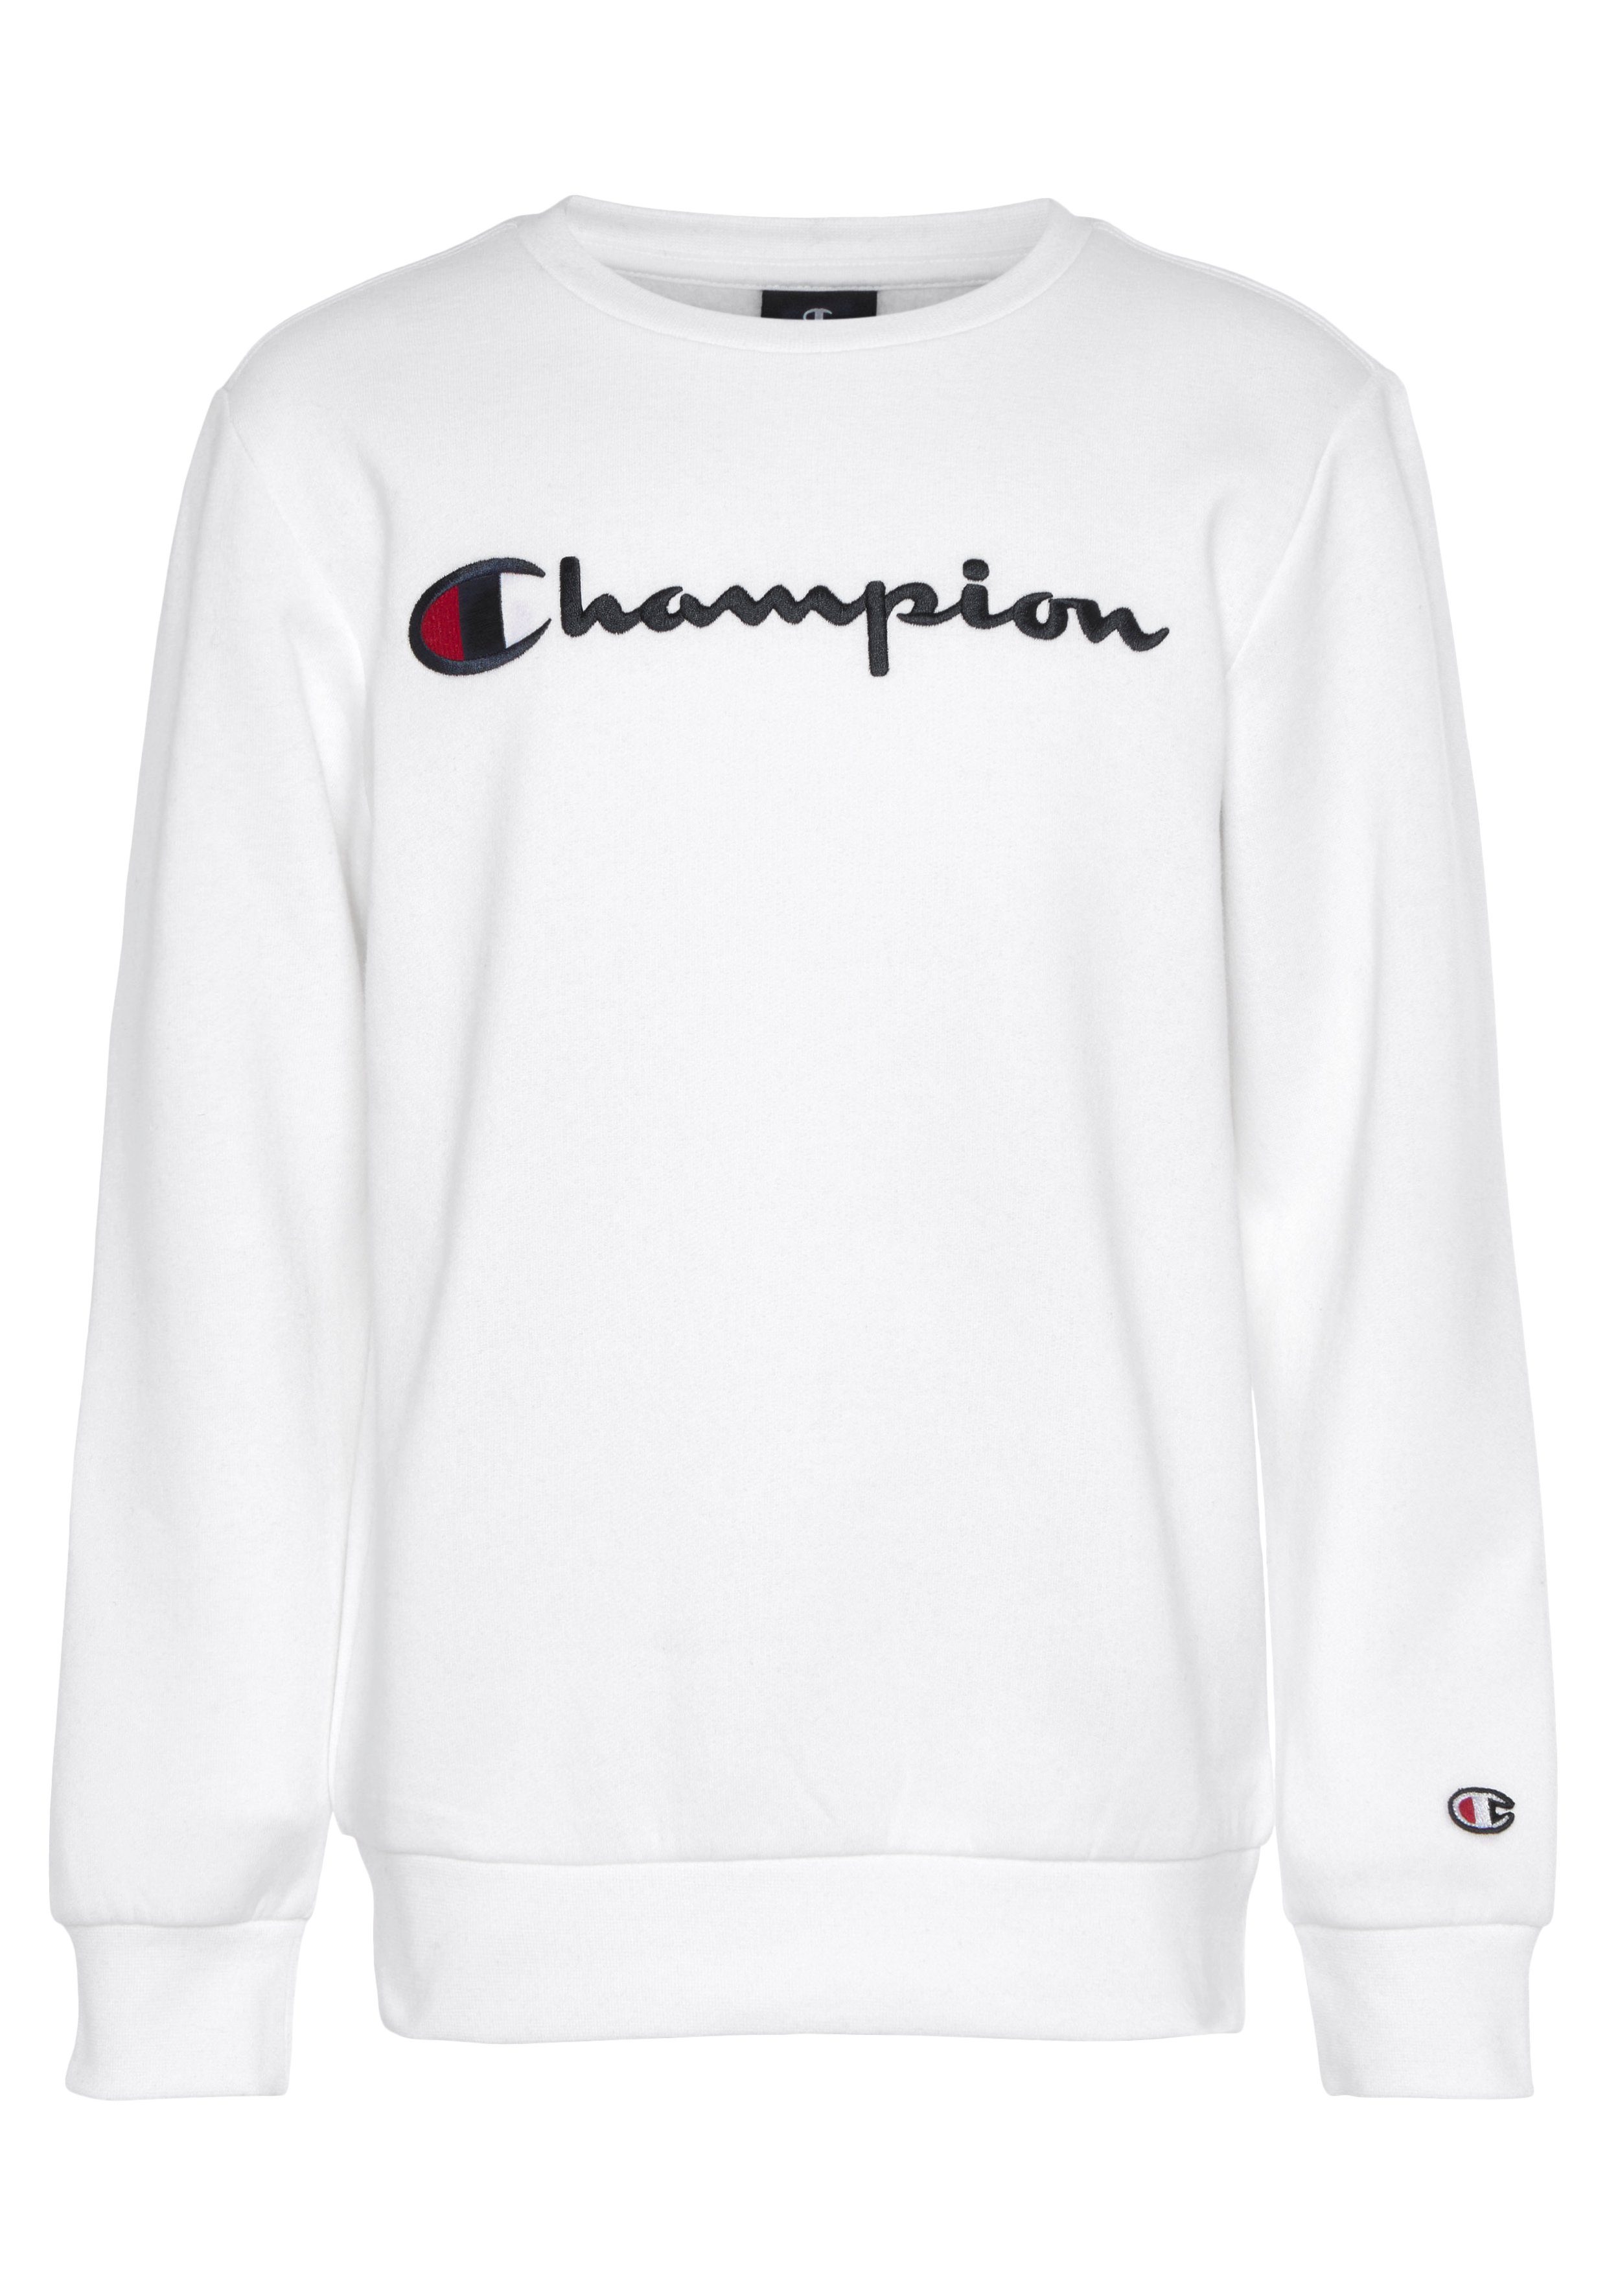 Champion Sweatshirt Classic Crewneck Logo - weiß large Sweatshirt Kinder für